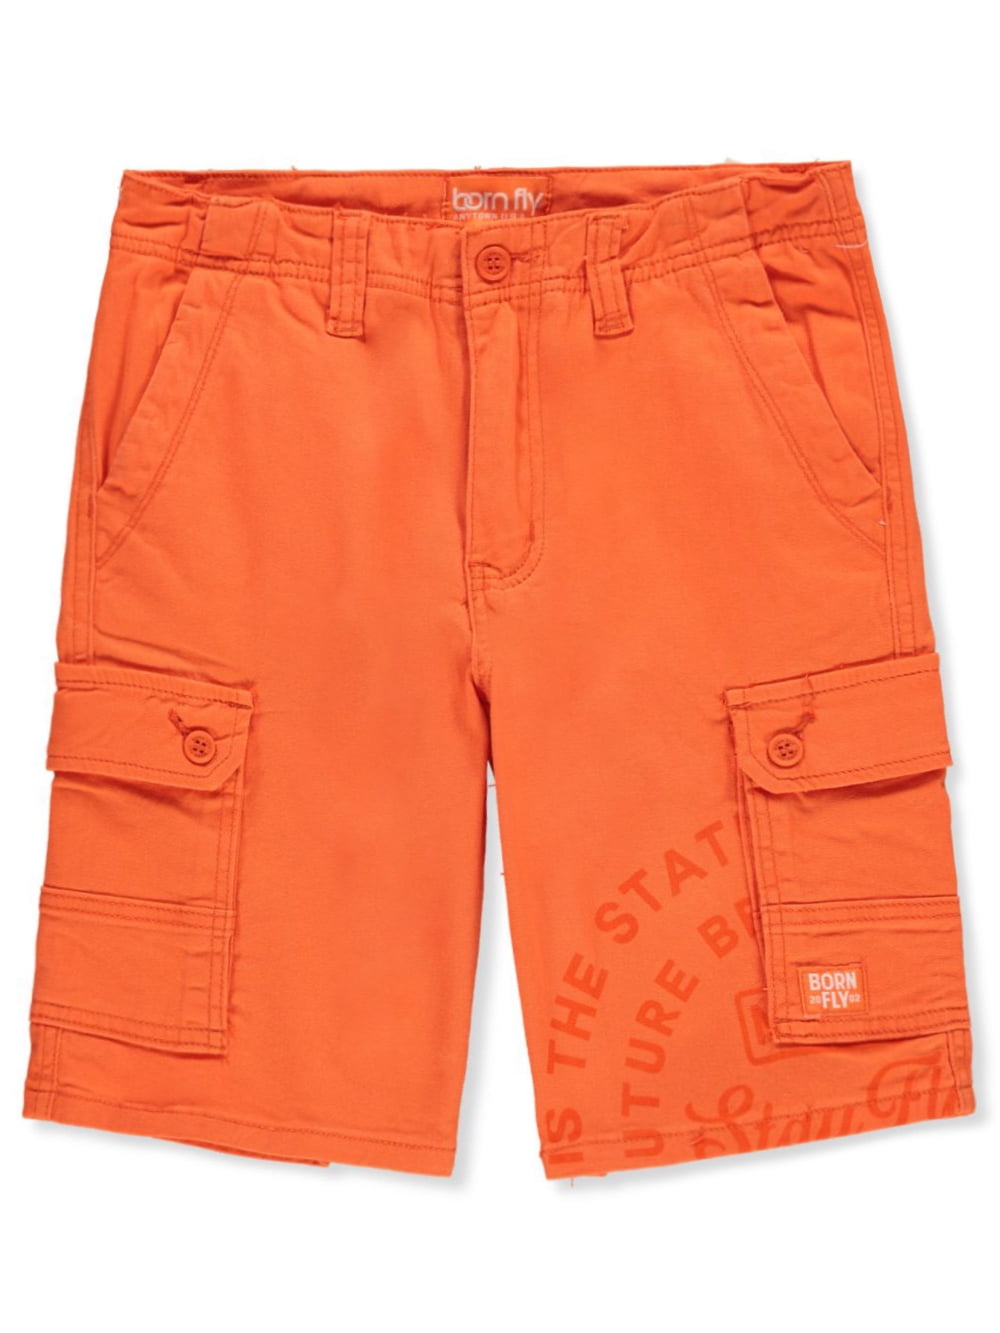 Born Fly Boys' Twill Cargo Shorts - orange, 18 (Big Boys)